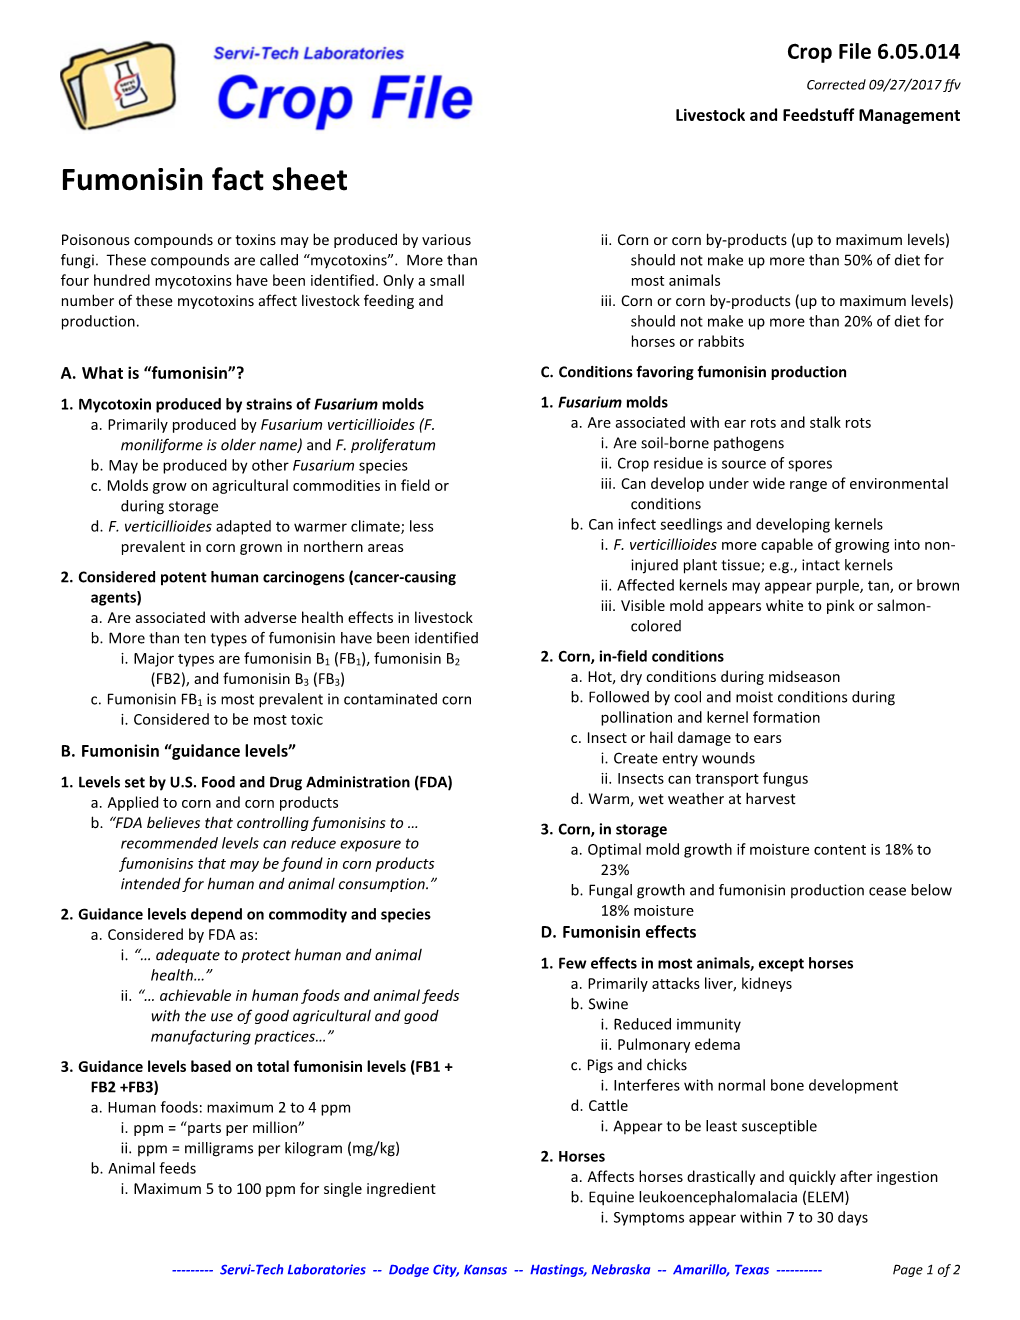 Fumonisin Fact Sheet